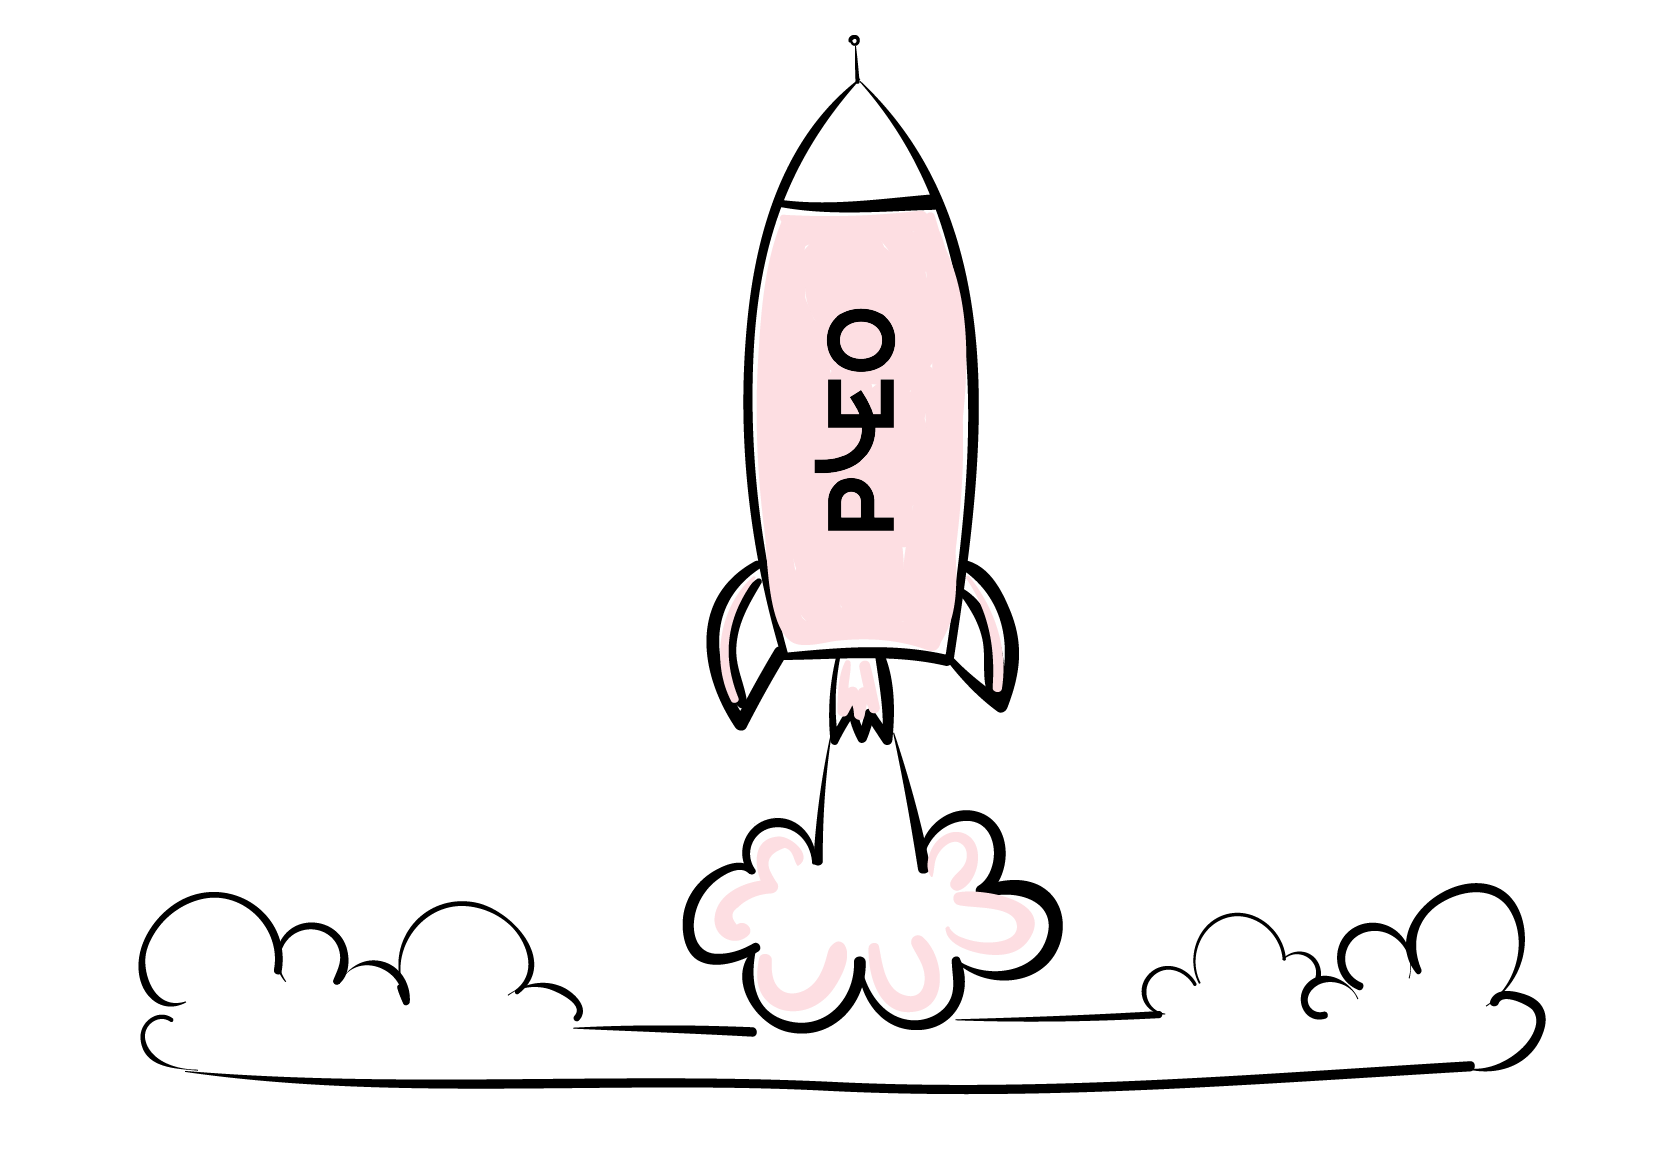 Pleo as a rocket